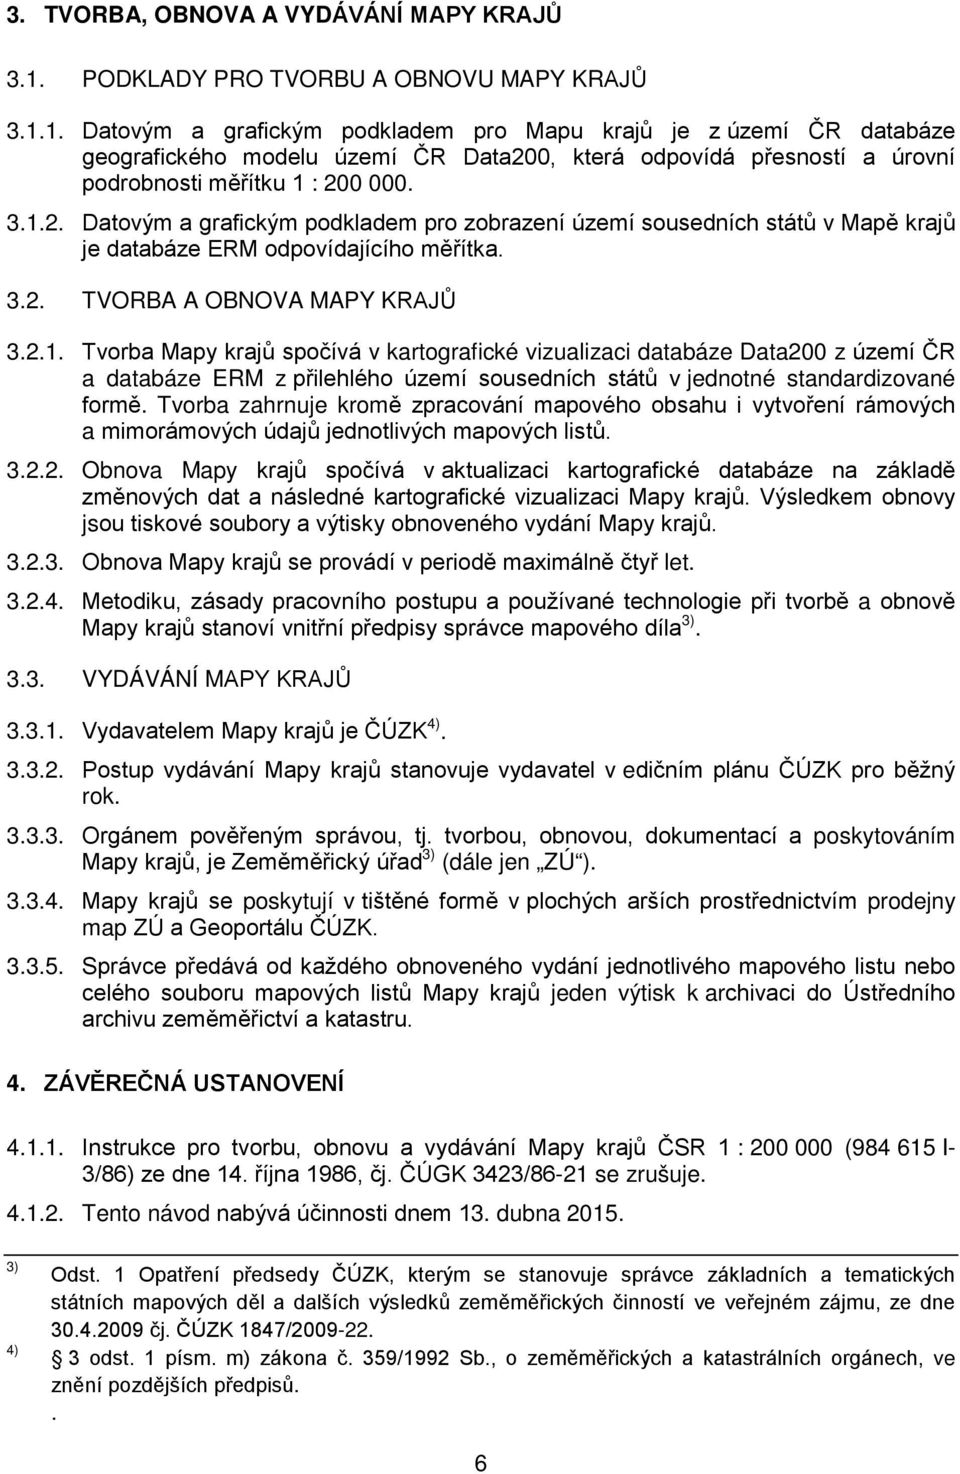 1. Datovým a grafickým podkladem pro Mapu krajů je z území ČR databáze geografického modelu území ČR Data20